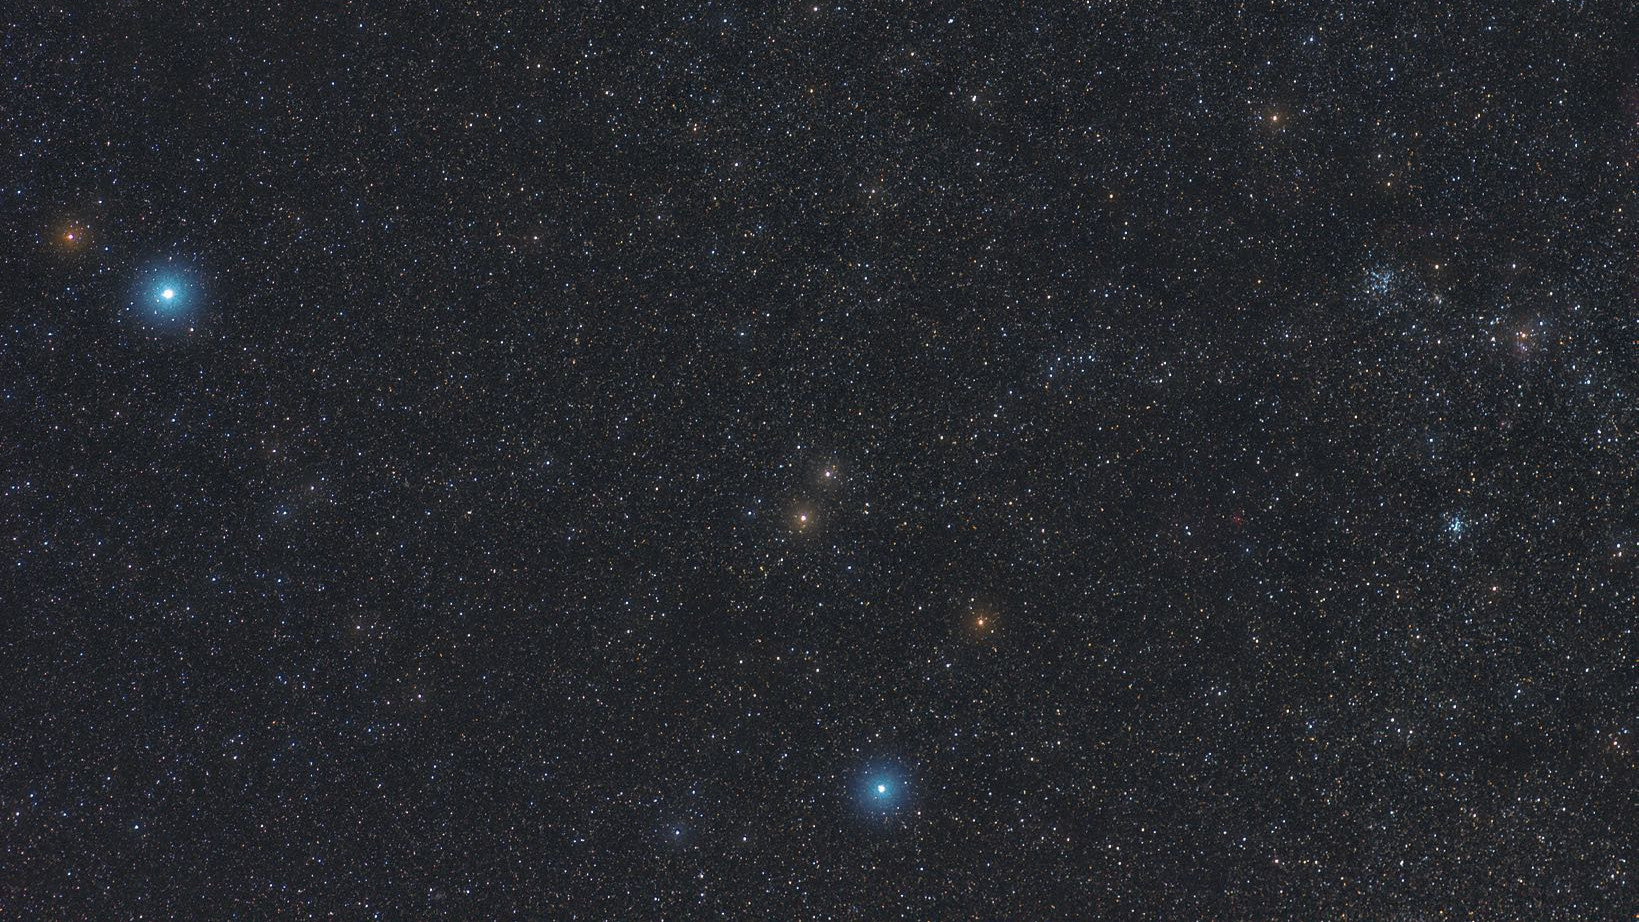 Das Sternbild Fuhrmann ist die Heimat vieler eindrucksvoller Sternhaufen.
Marcus Degenkolbe